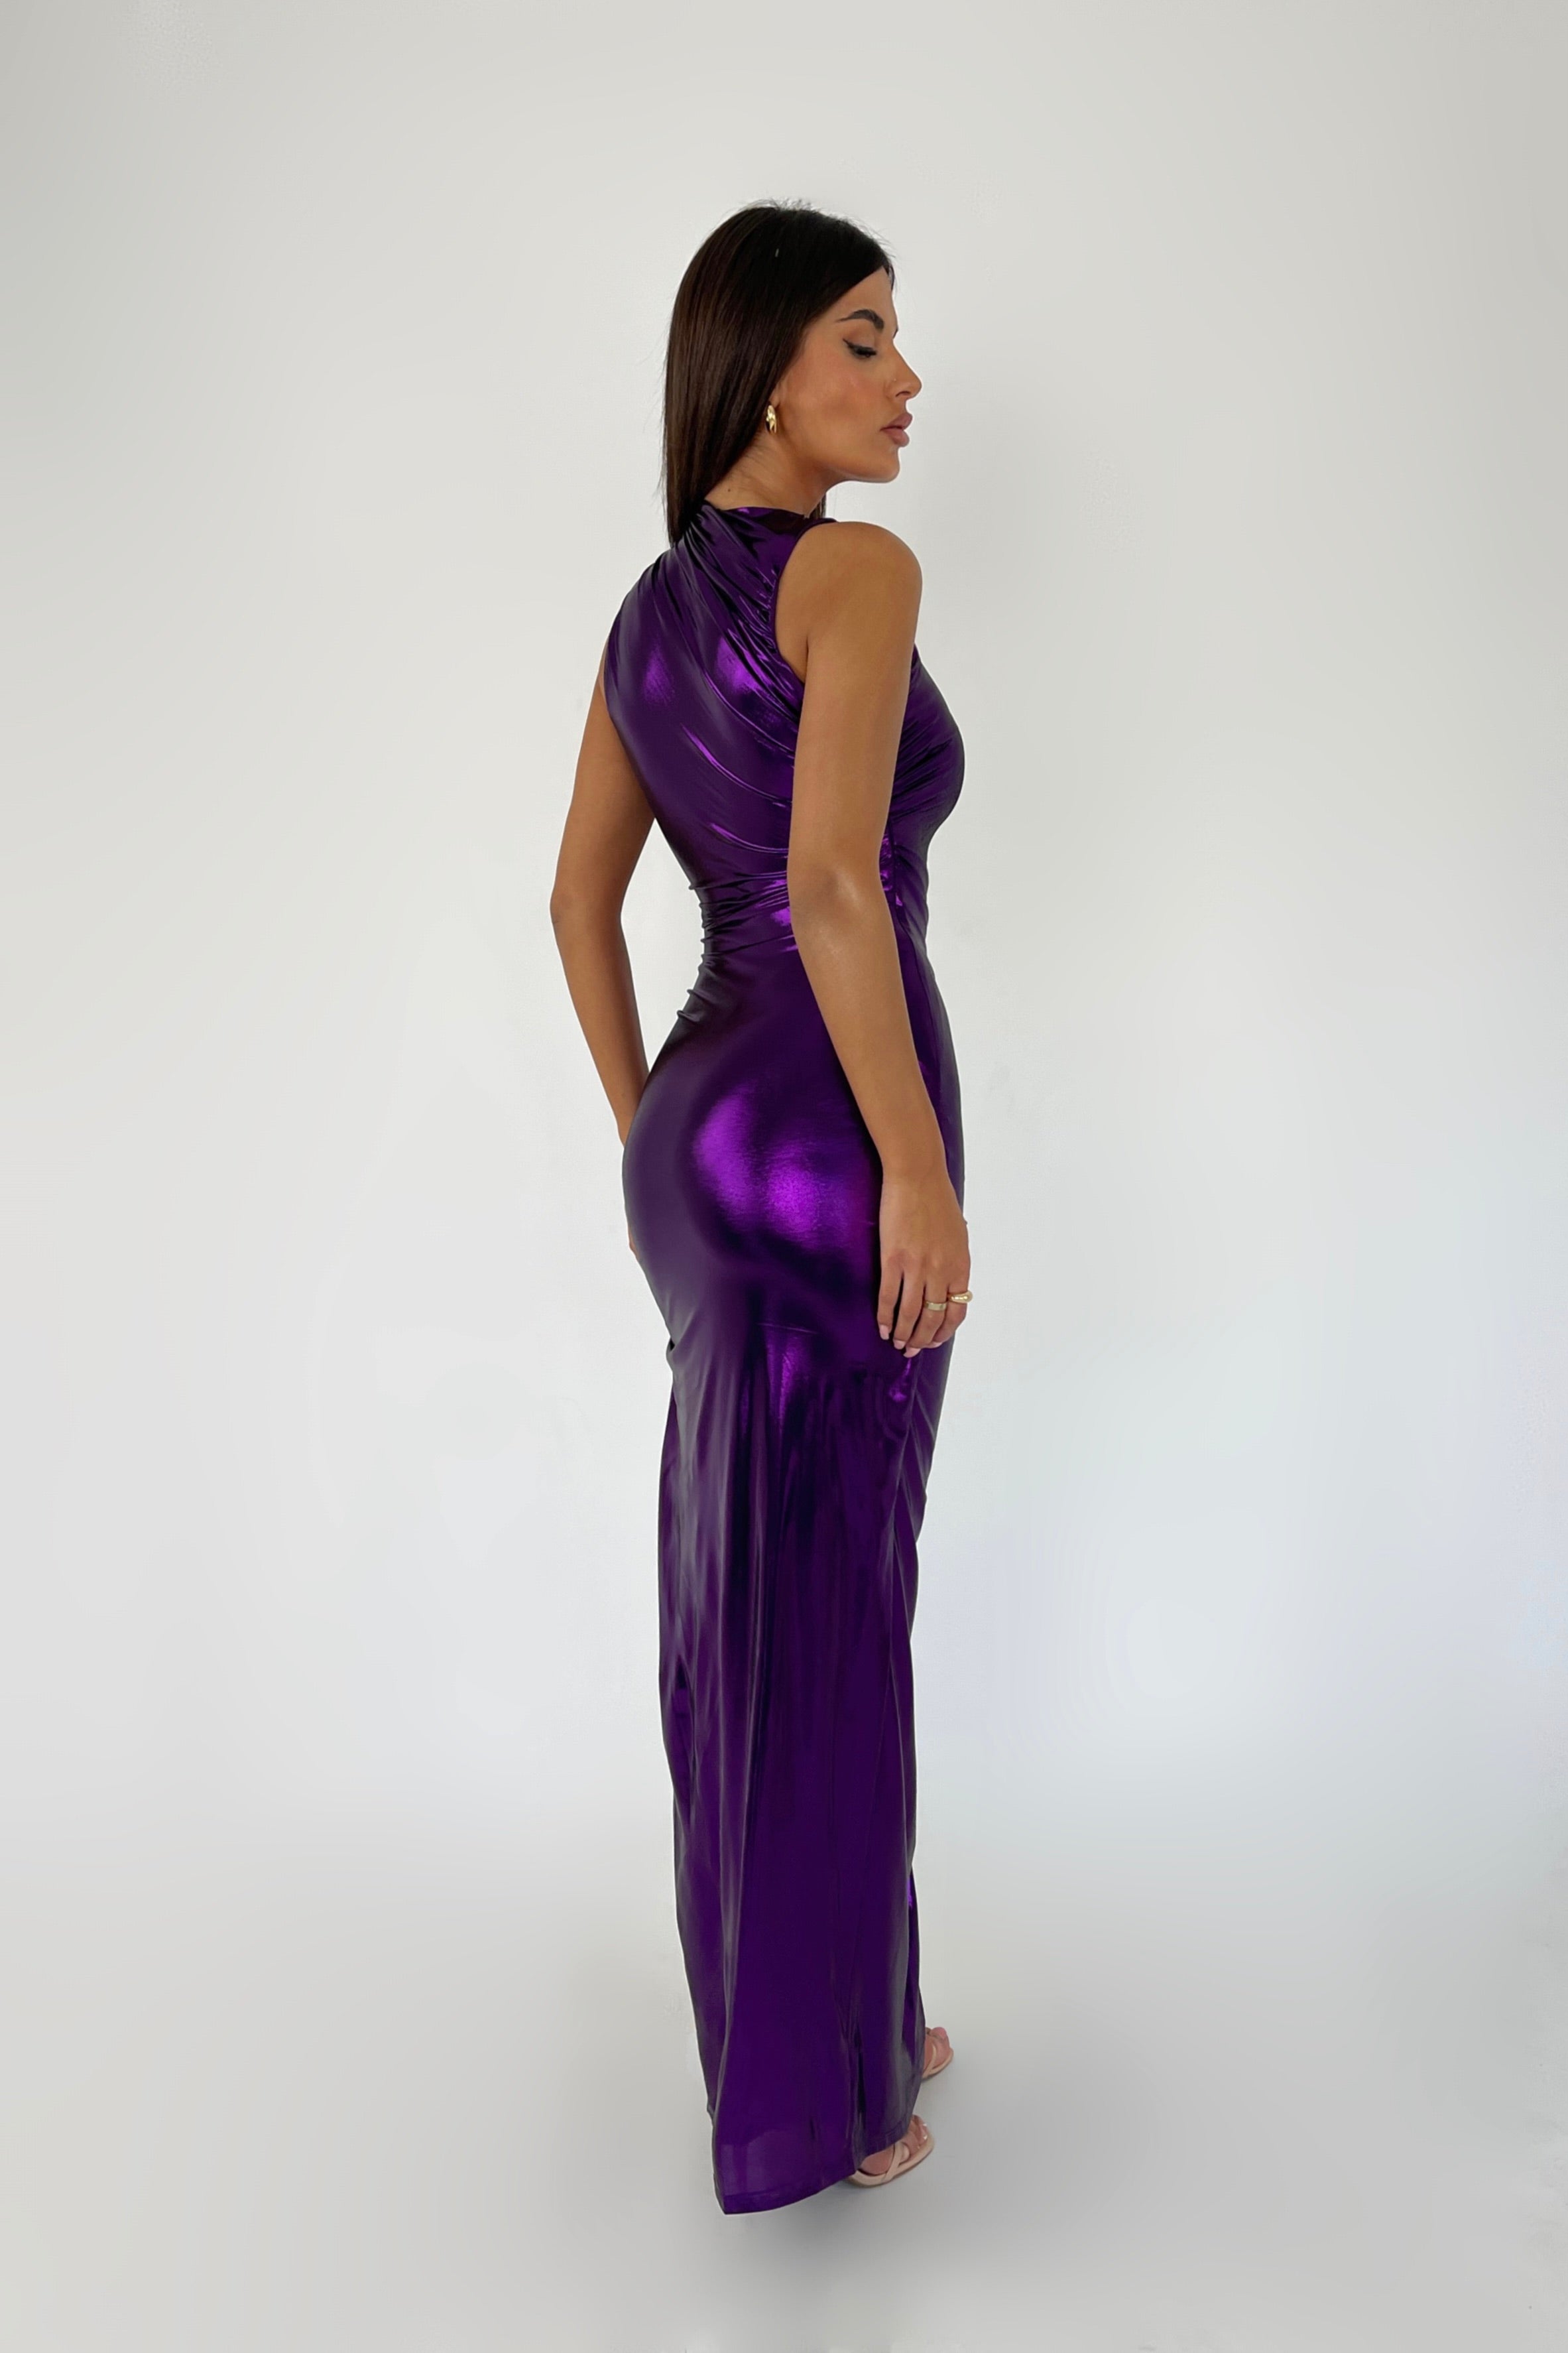 Marisol Purple Dress